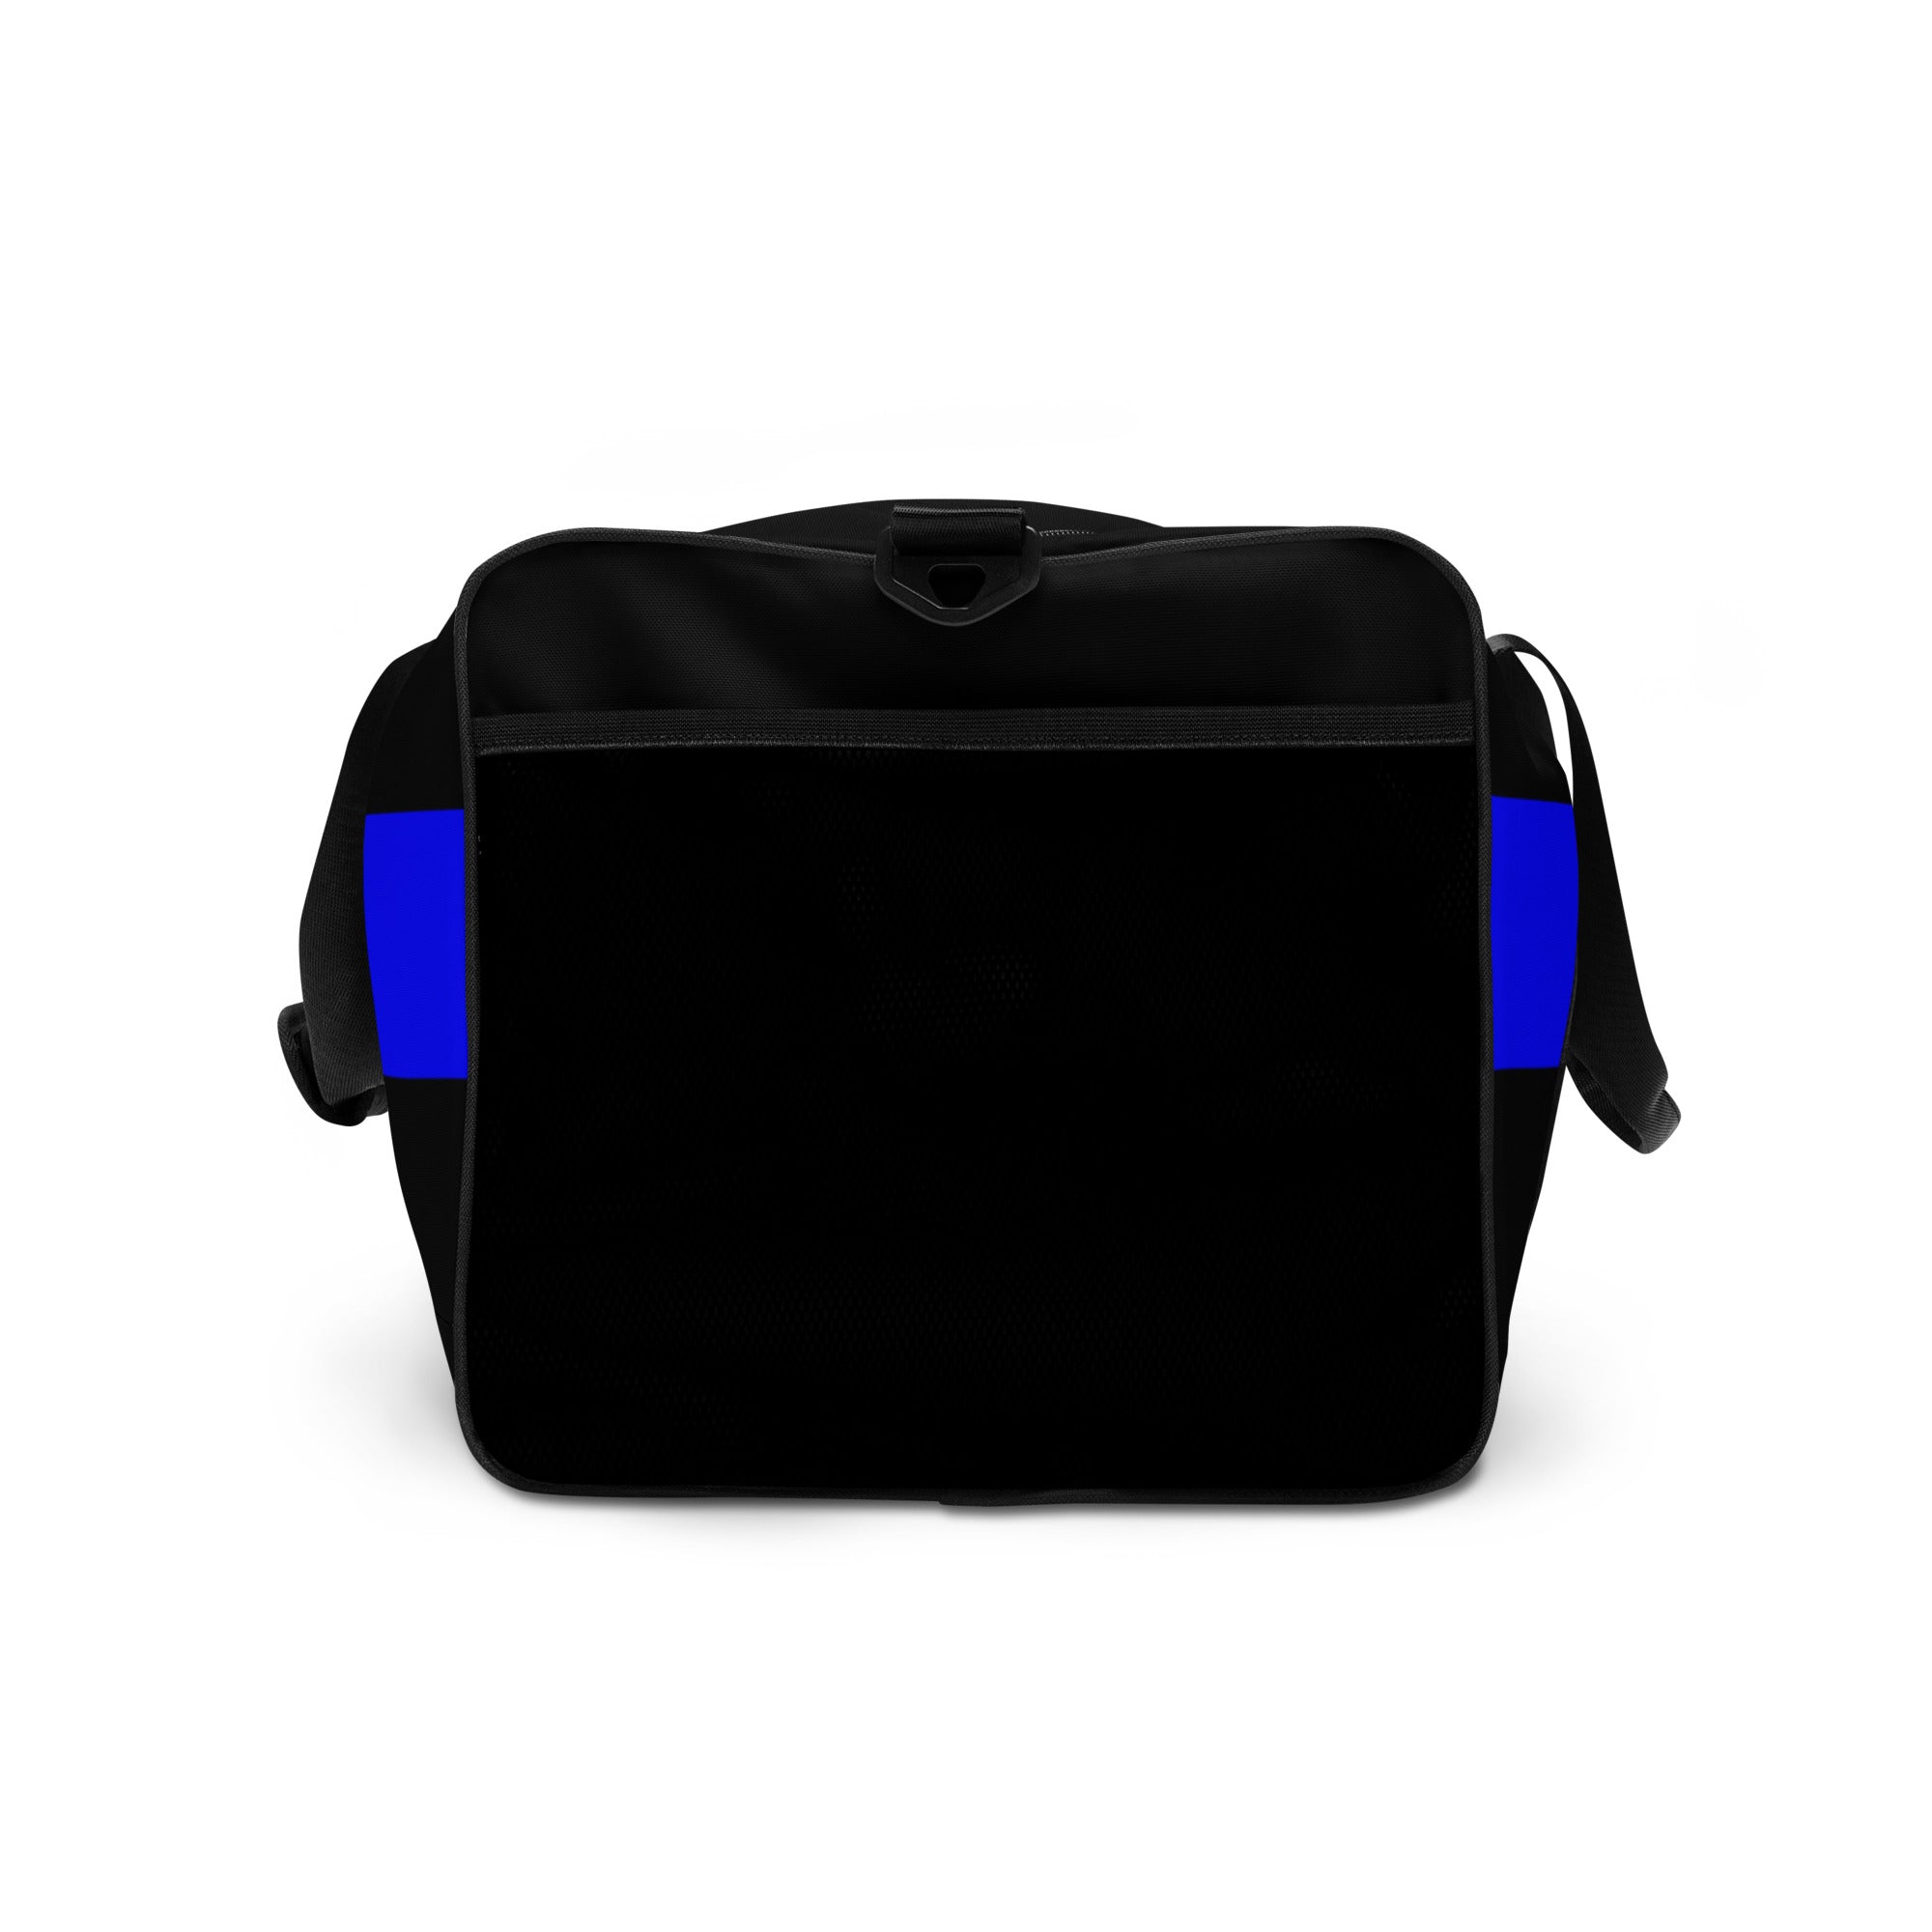 Thin Blue Line Black Duffle Bag